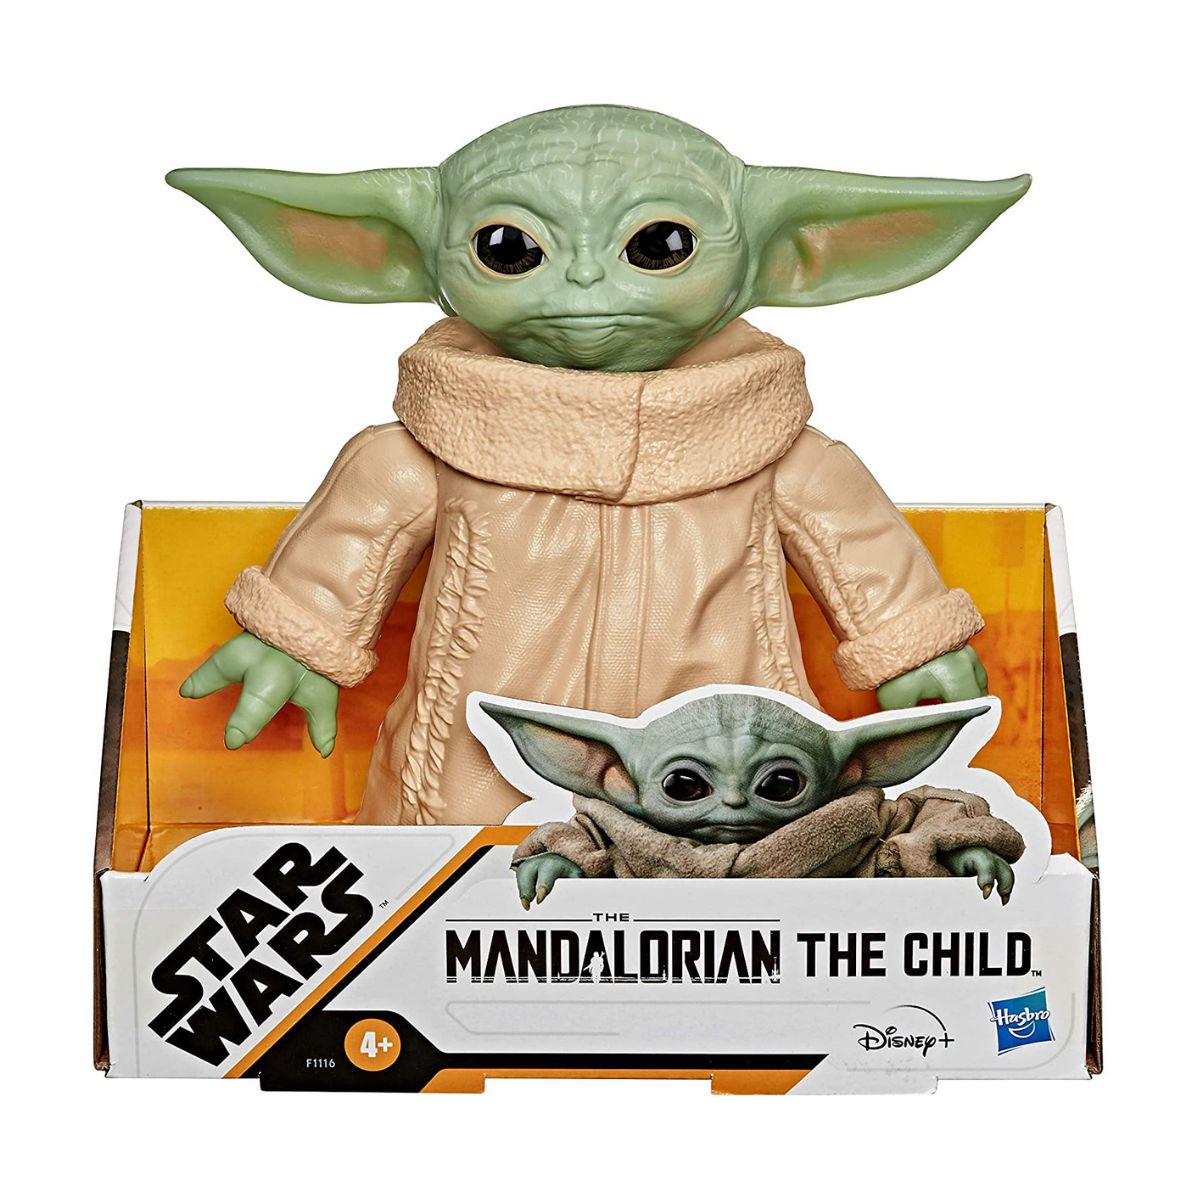 Baby yoda, mandalorian, Star Wars